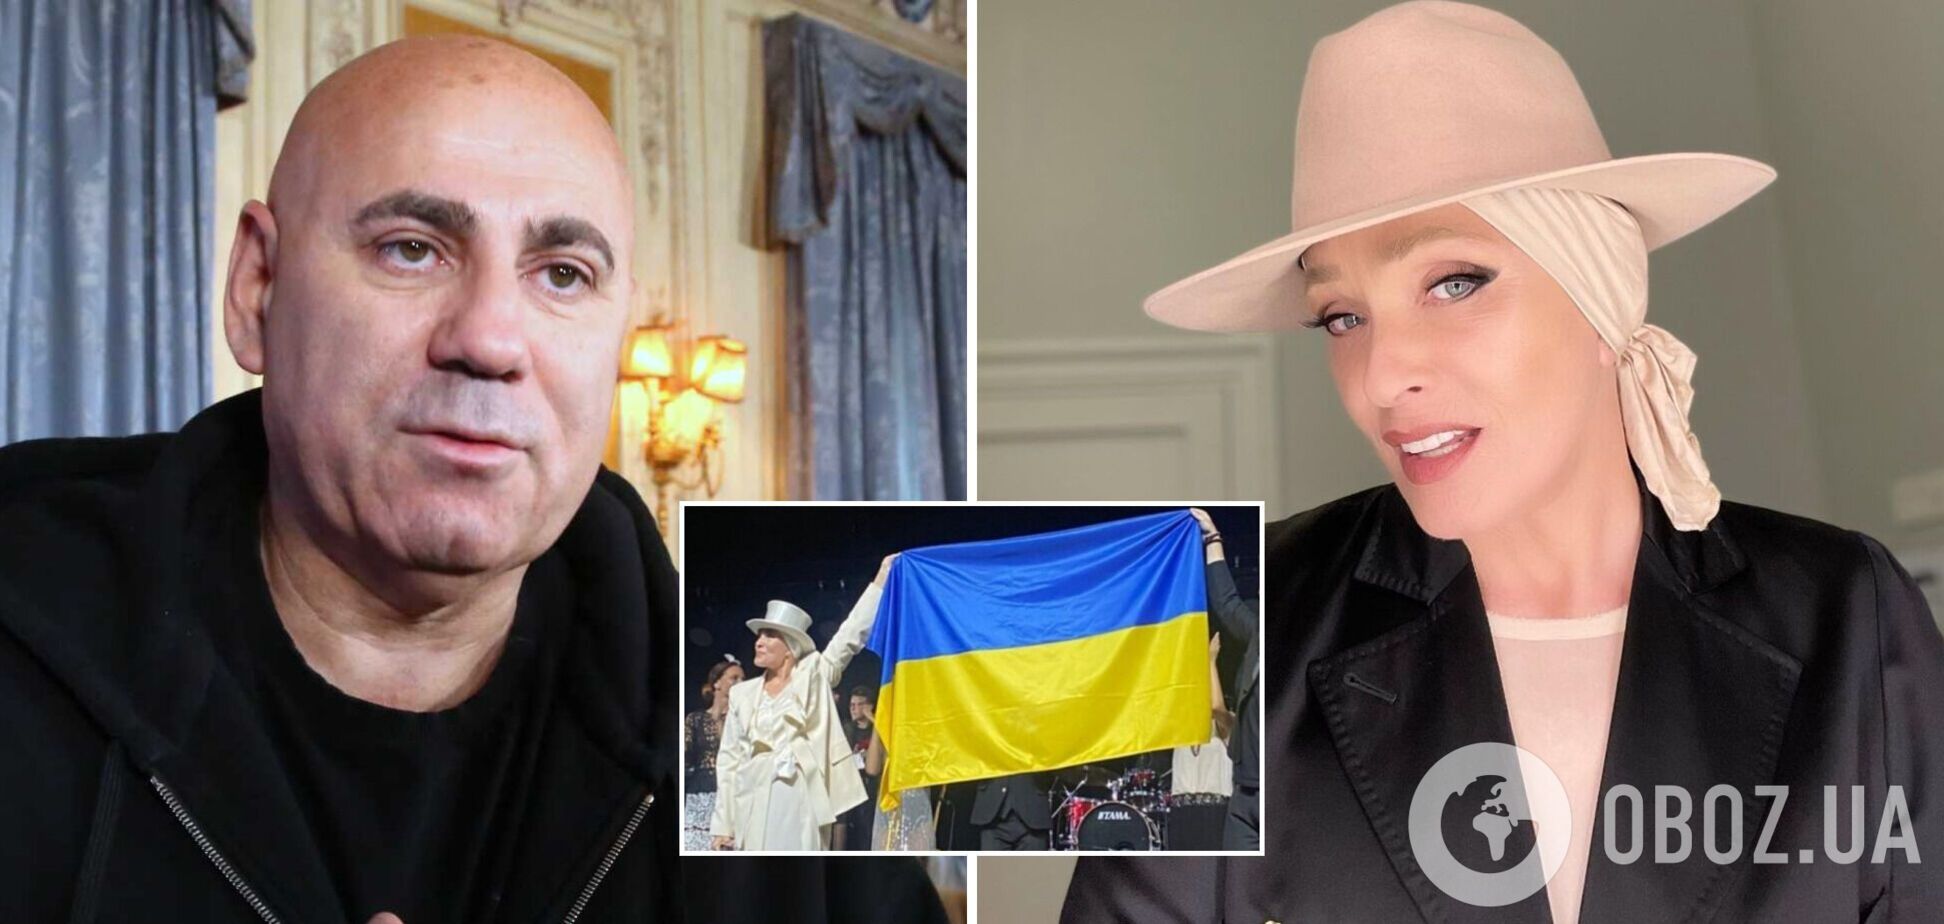 Российский продюсер Пригожин возложил на Лайму Вайкуле вину за войну в Украине и санкции против России